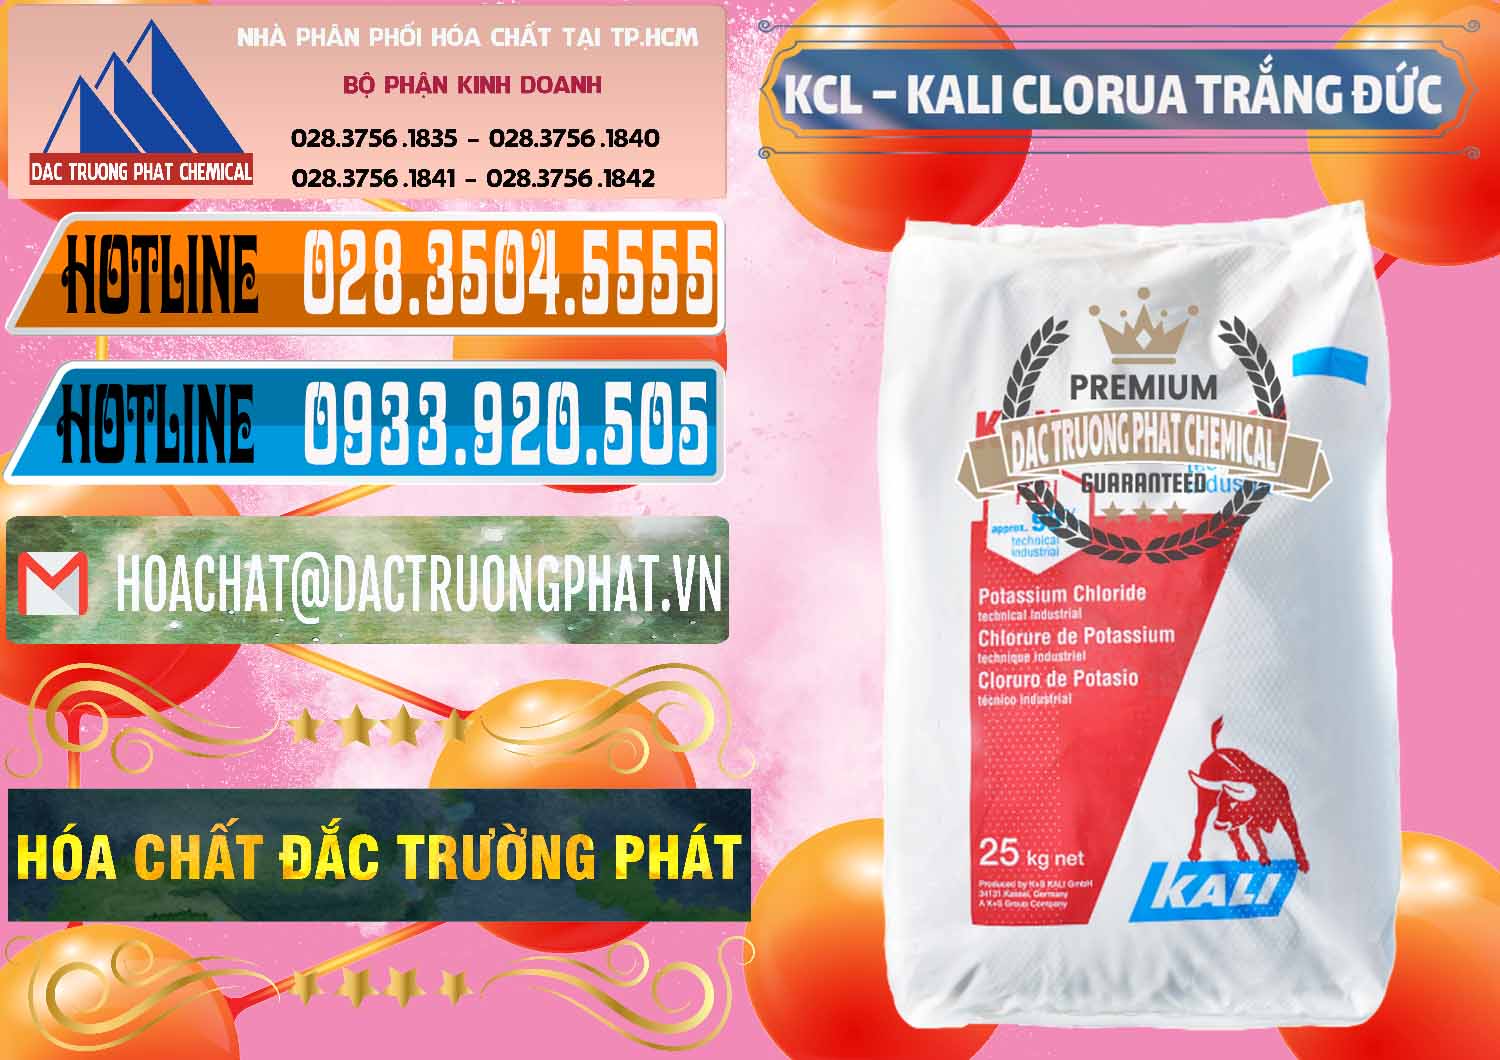 Nhà nhập khẩu _ bán KCL – Kali Clorua Trắng Đức Germany - 0086 - Cty nhập khẩu & phân phối hóa chất tại TP.HCM - stmp.net